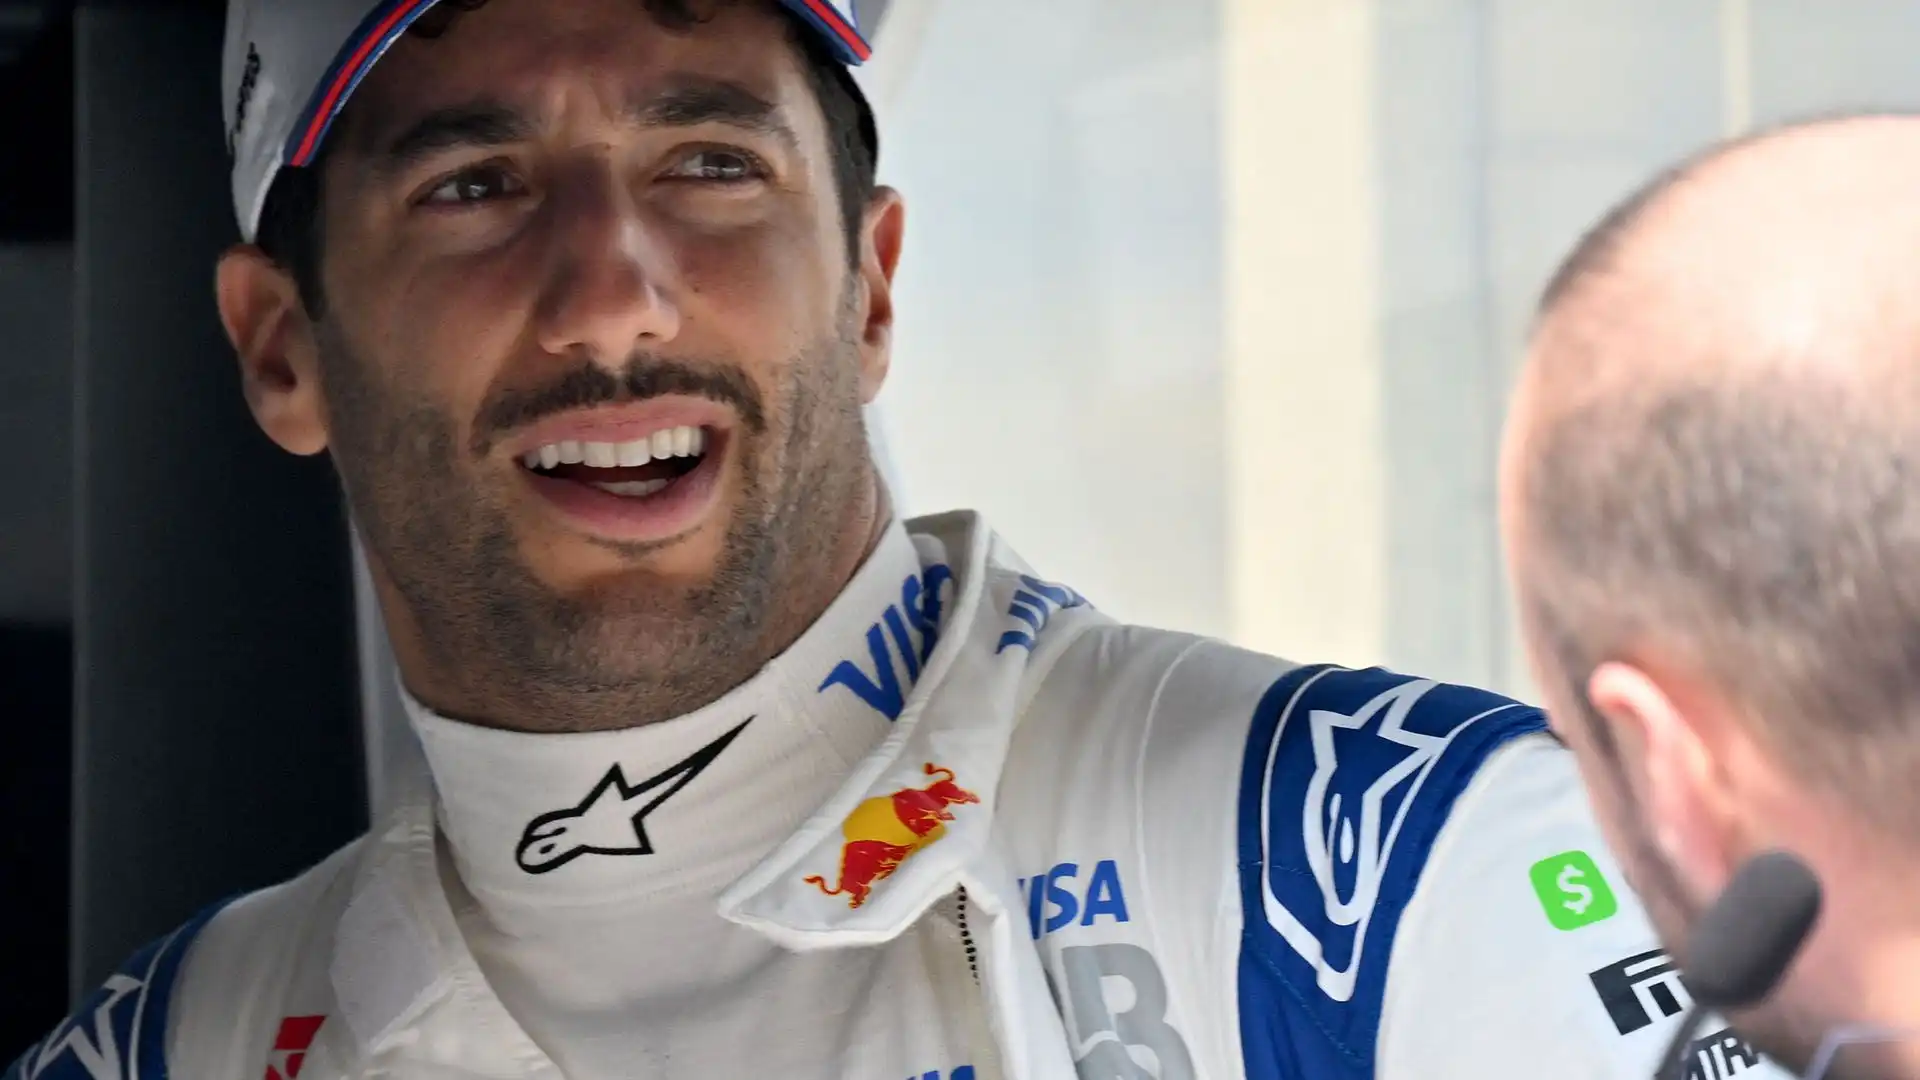 "Vogliono schiacciare tutti": è l'avvertimento di Daniel Ricciardo